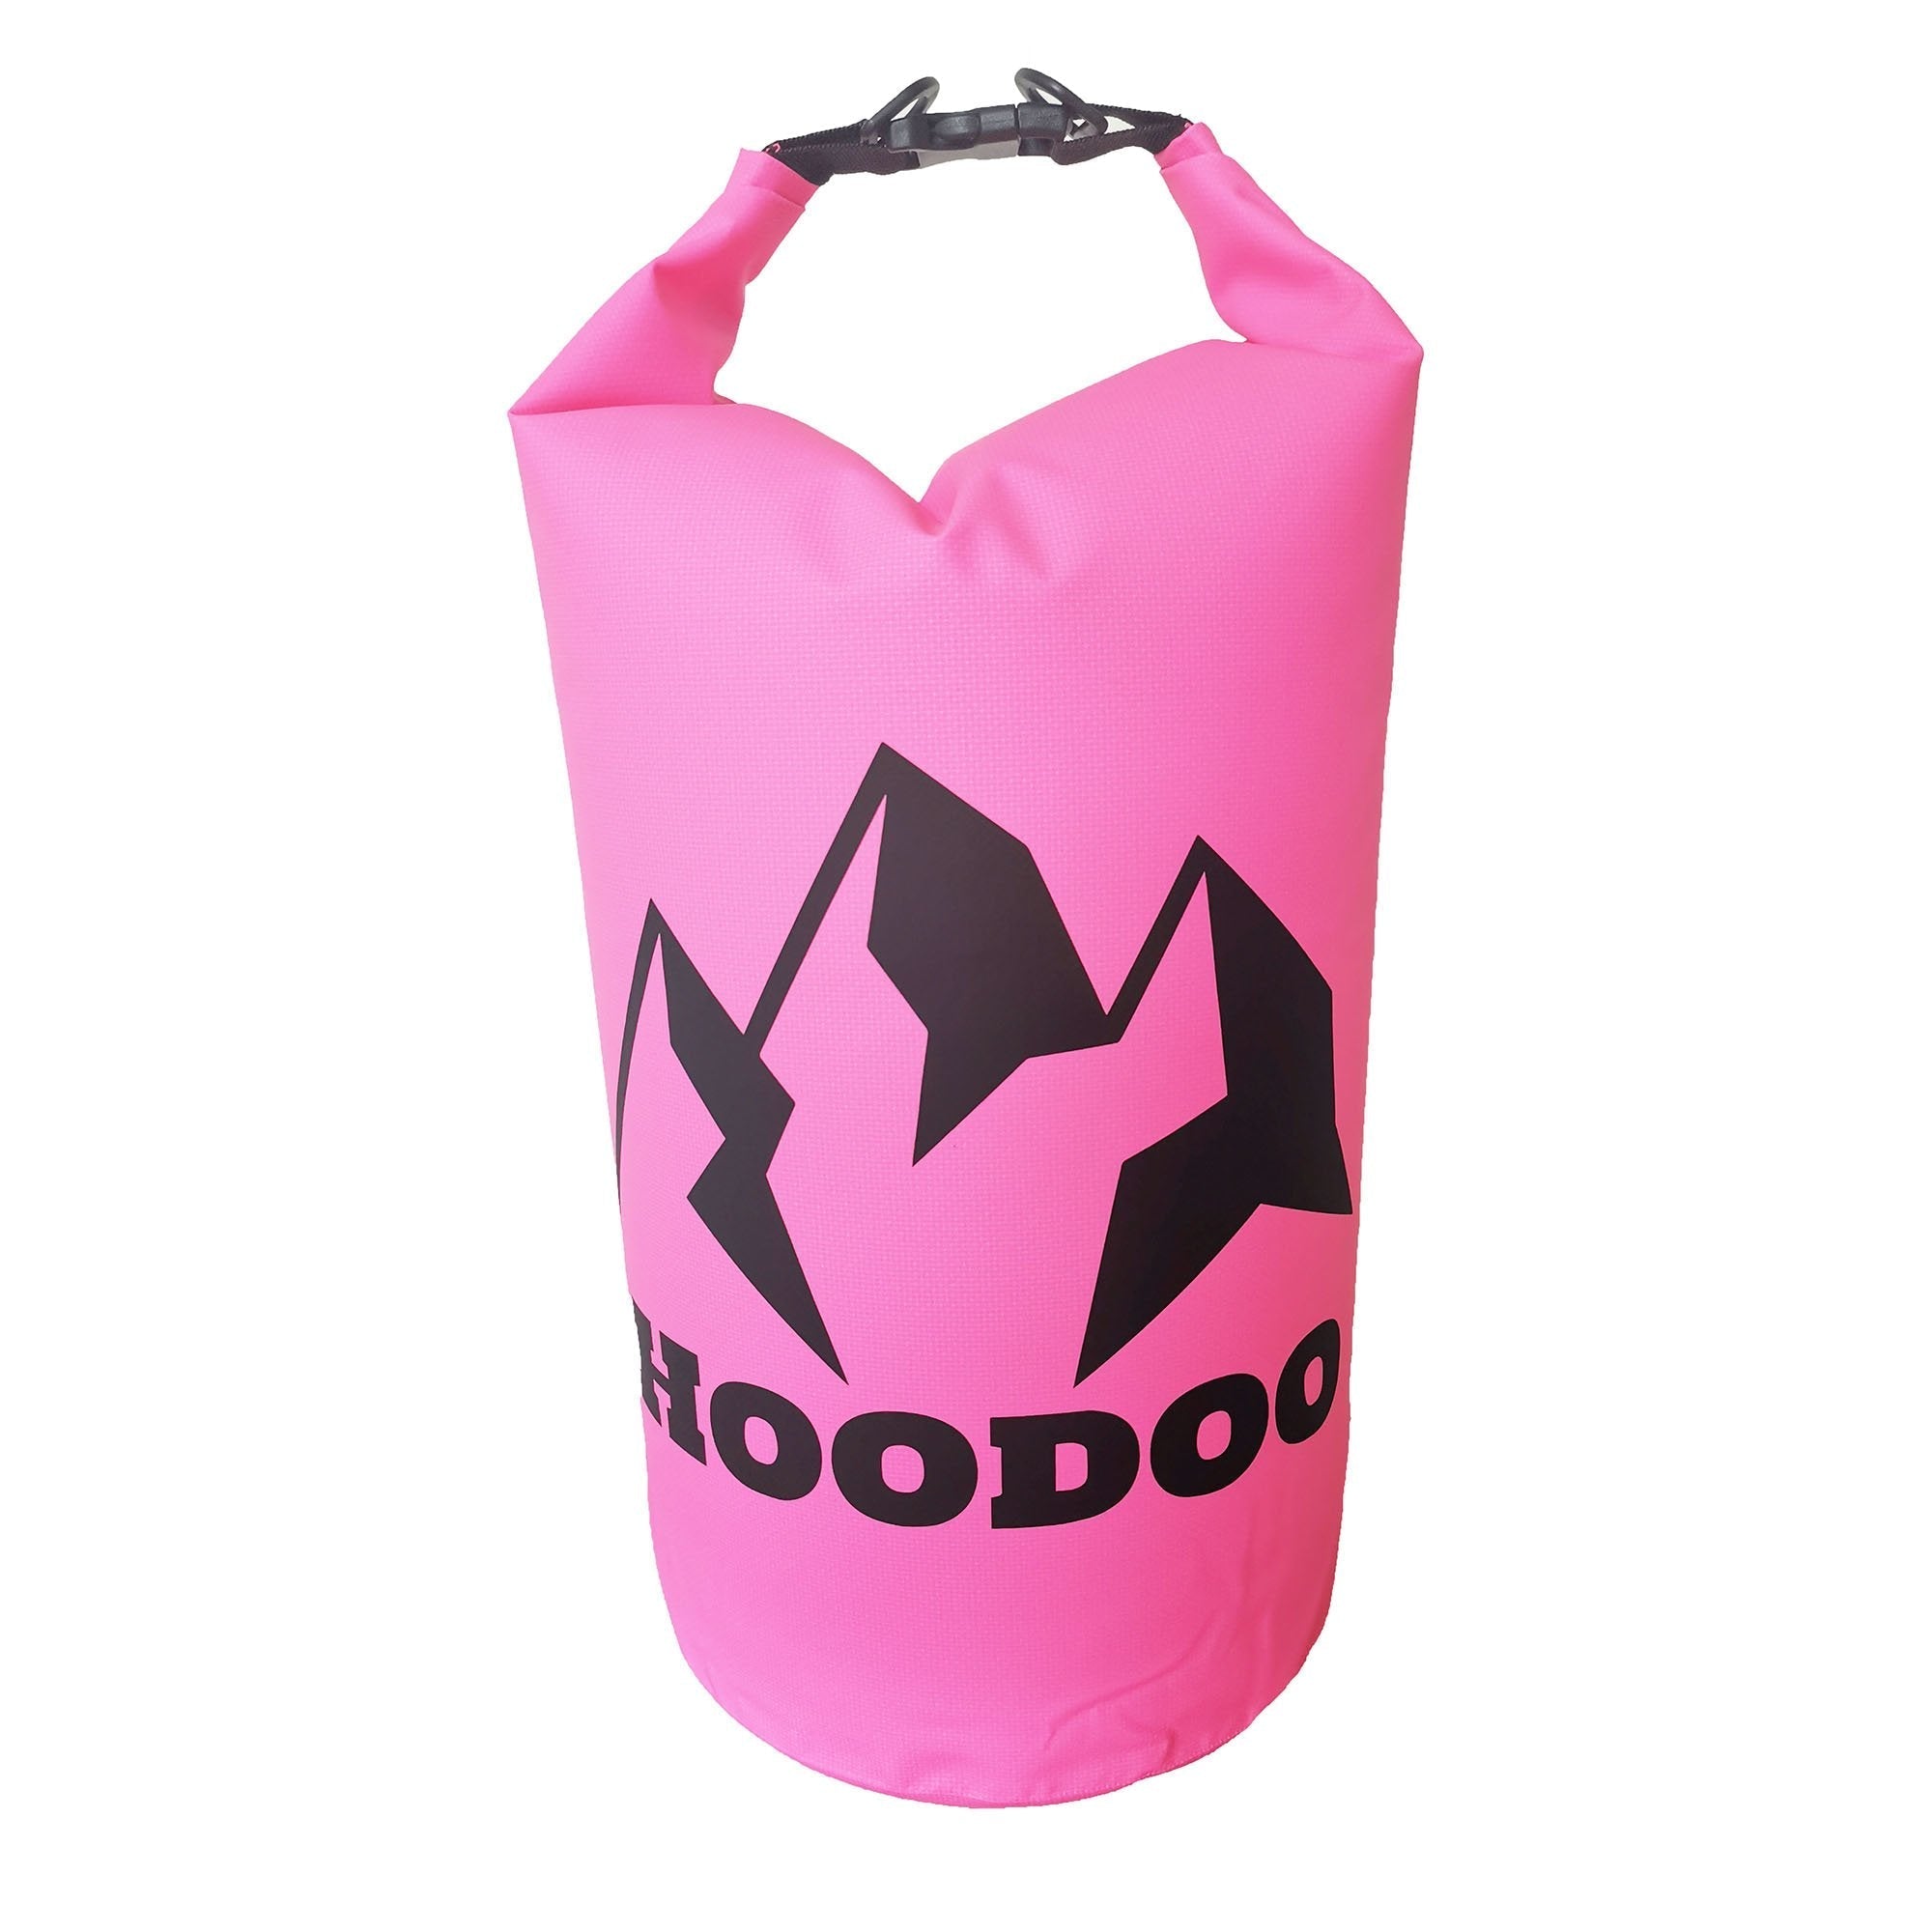 Hoodoo 20L Waterproof Dry Bag Dry Bag Hoodoo Sports Pink 